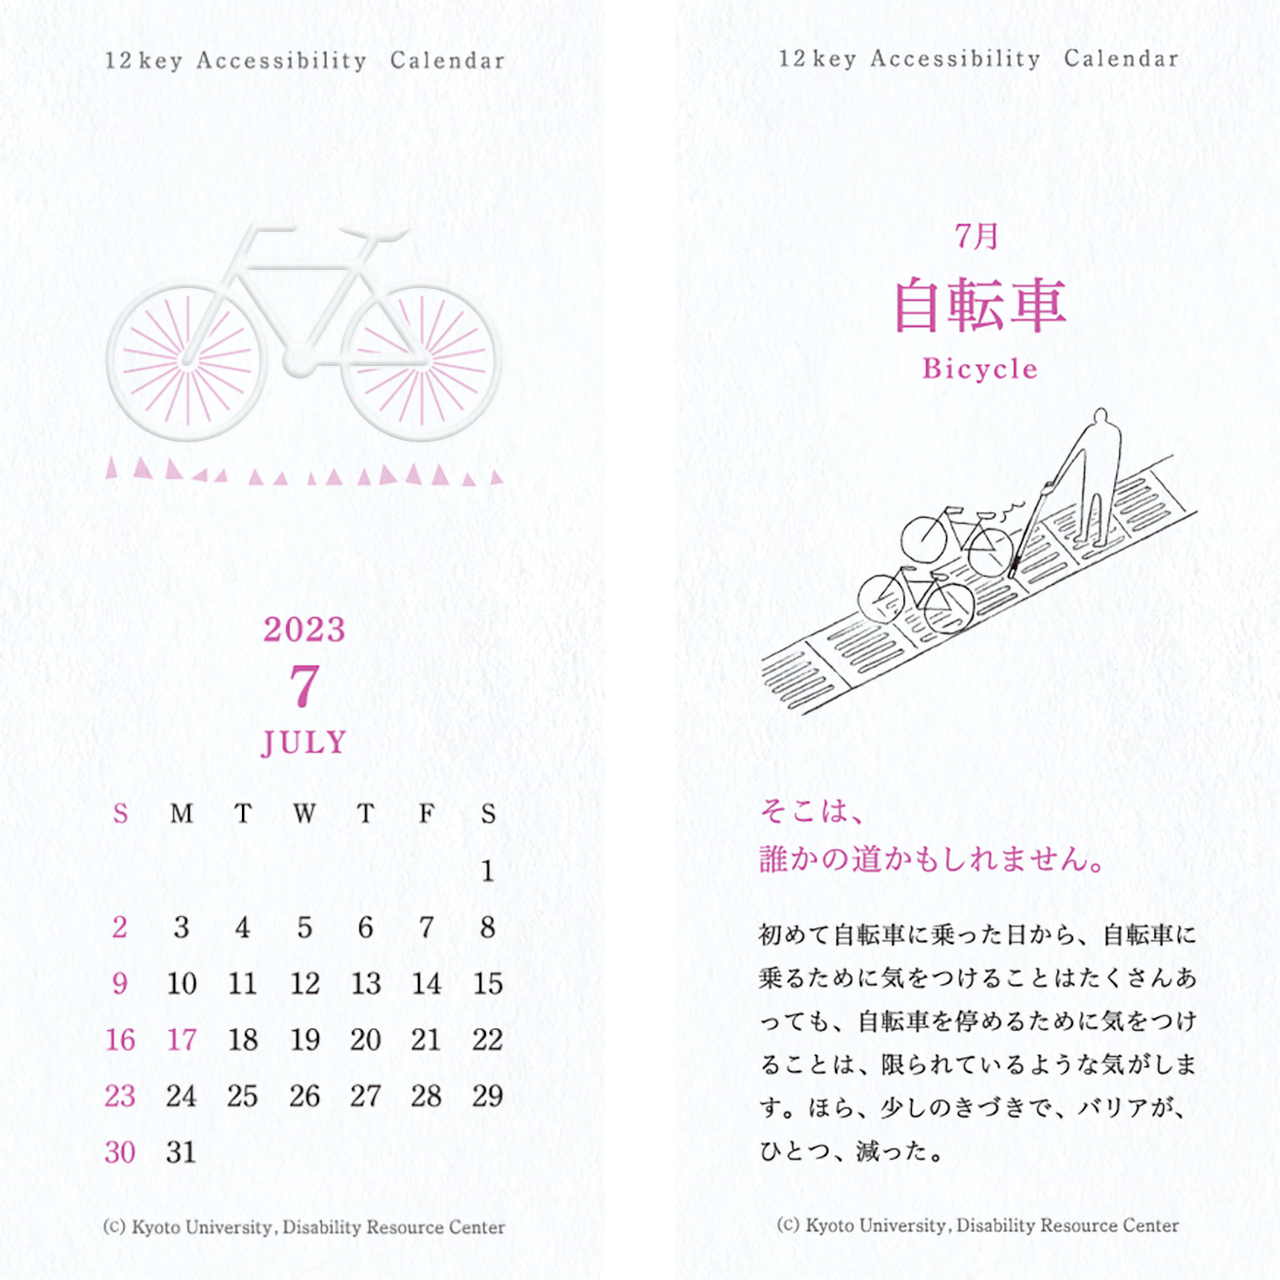 カレンダーの画像。表面：自転車の絵とカレンダー。裏面：点字ブロックにはみ出して止められた他自転車と白杖を持った人